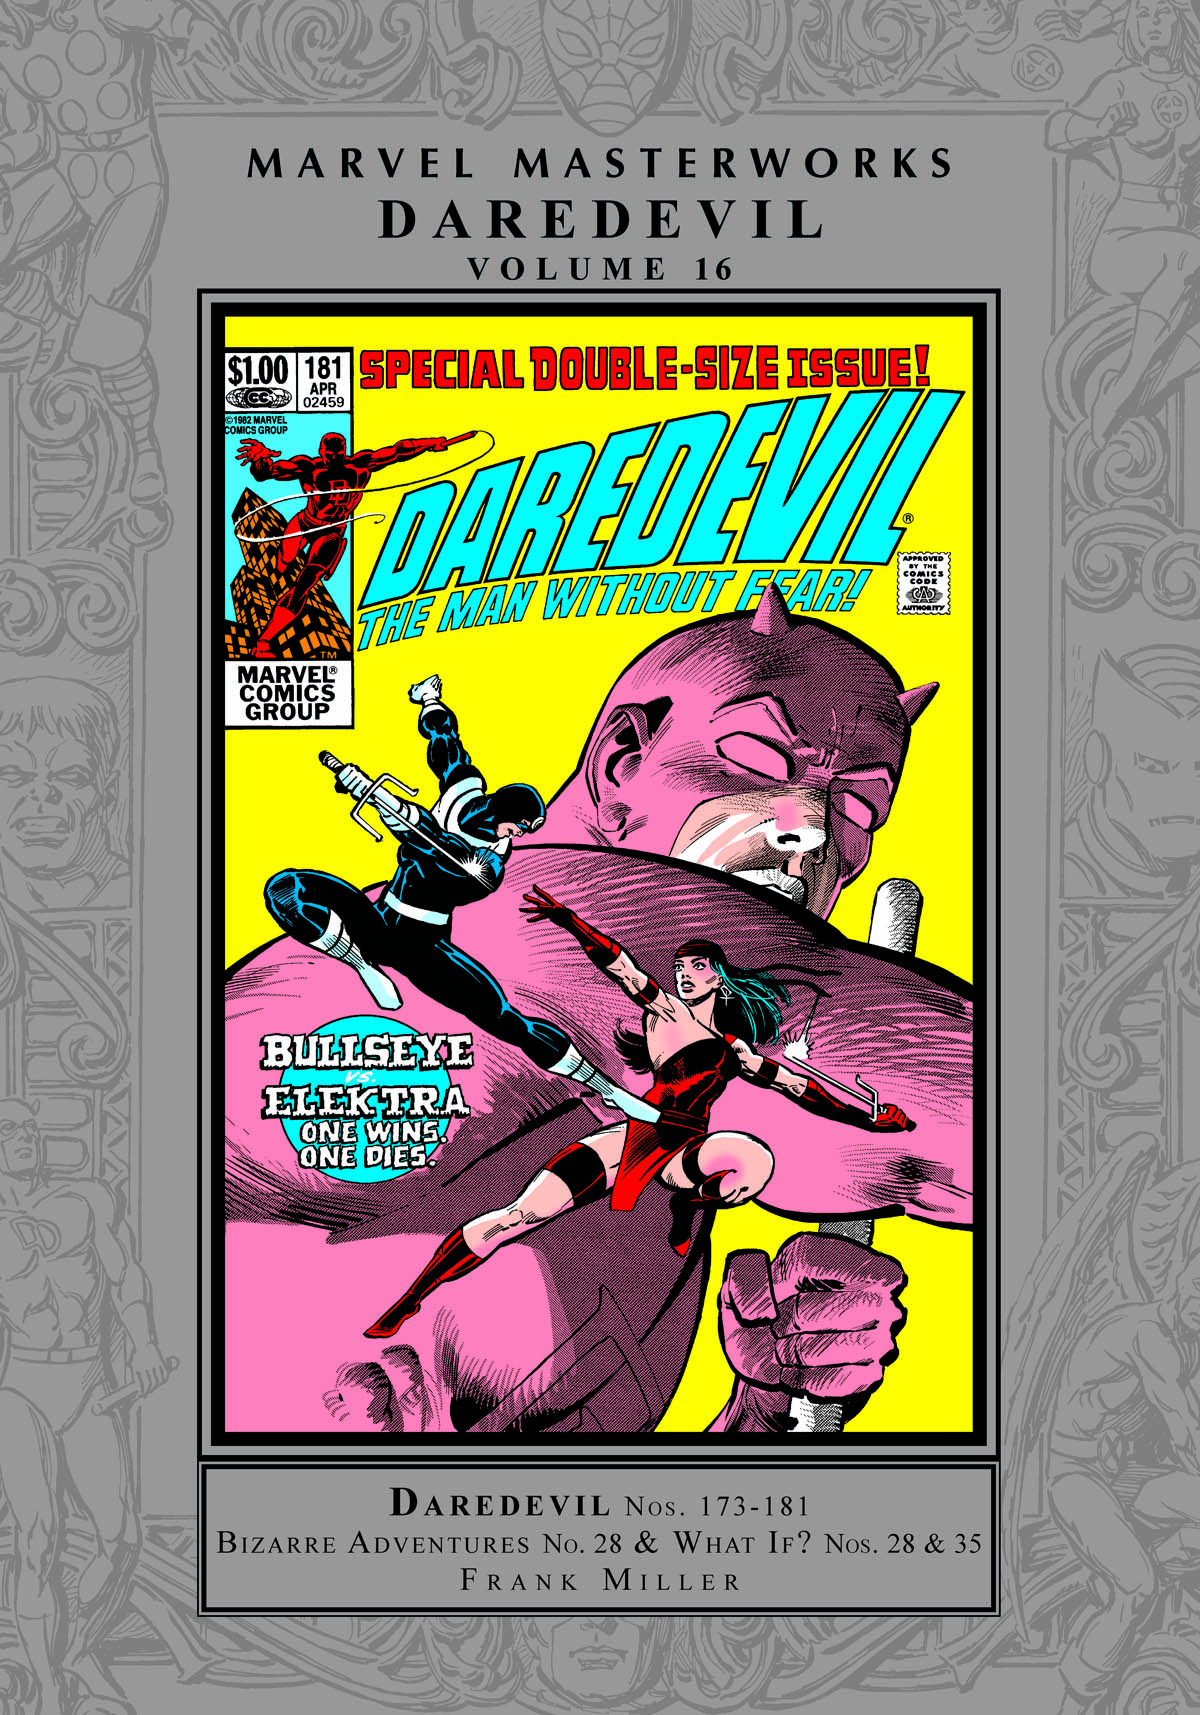 Marvel Masterworks: Daredevil Vol. 16 (Trade Paperback)